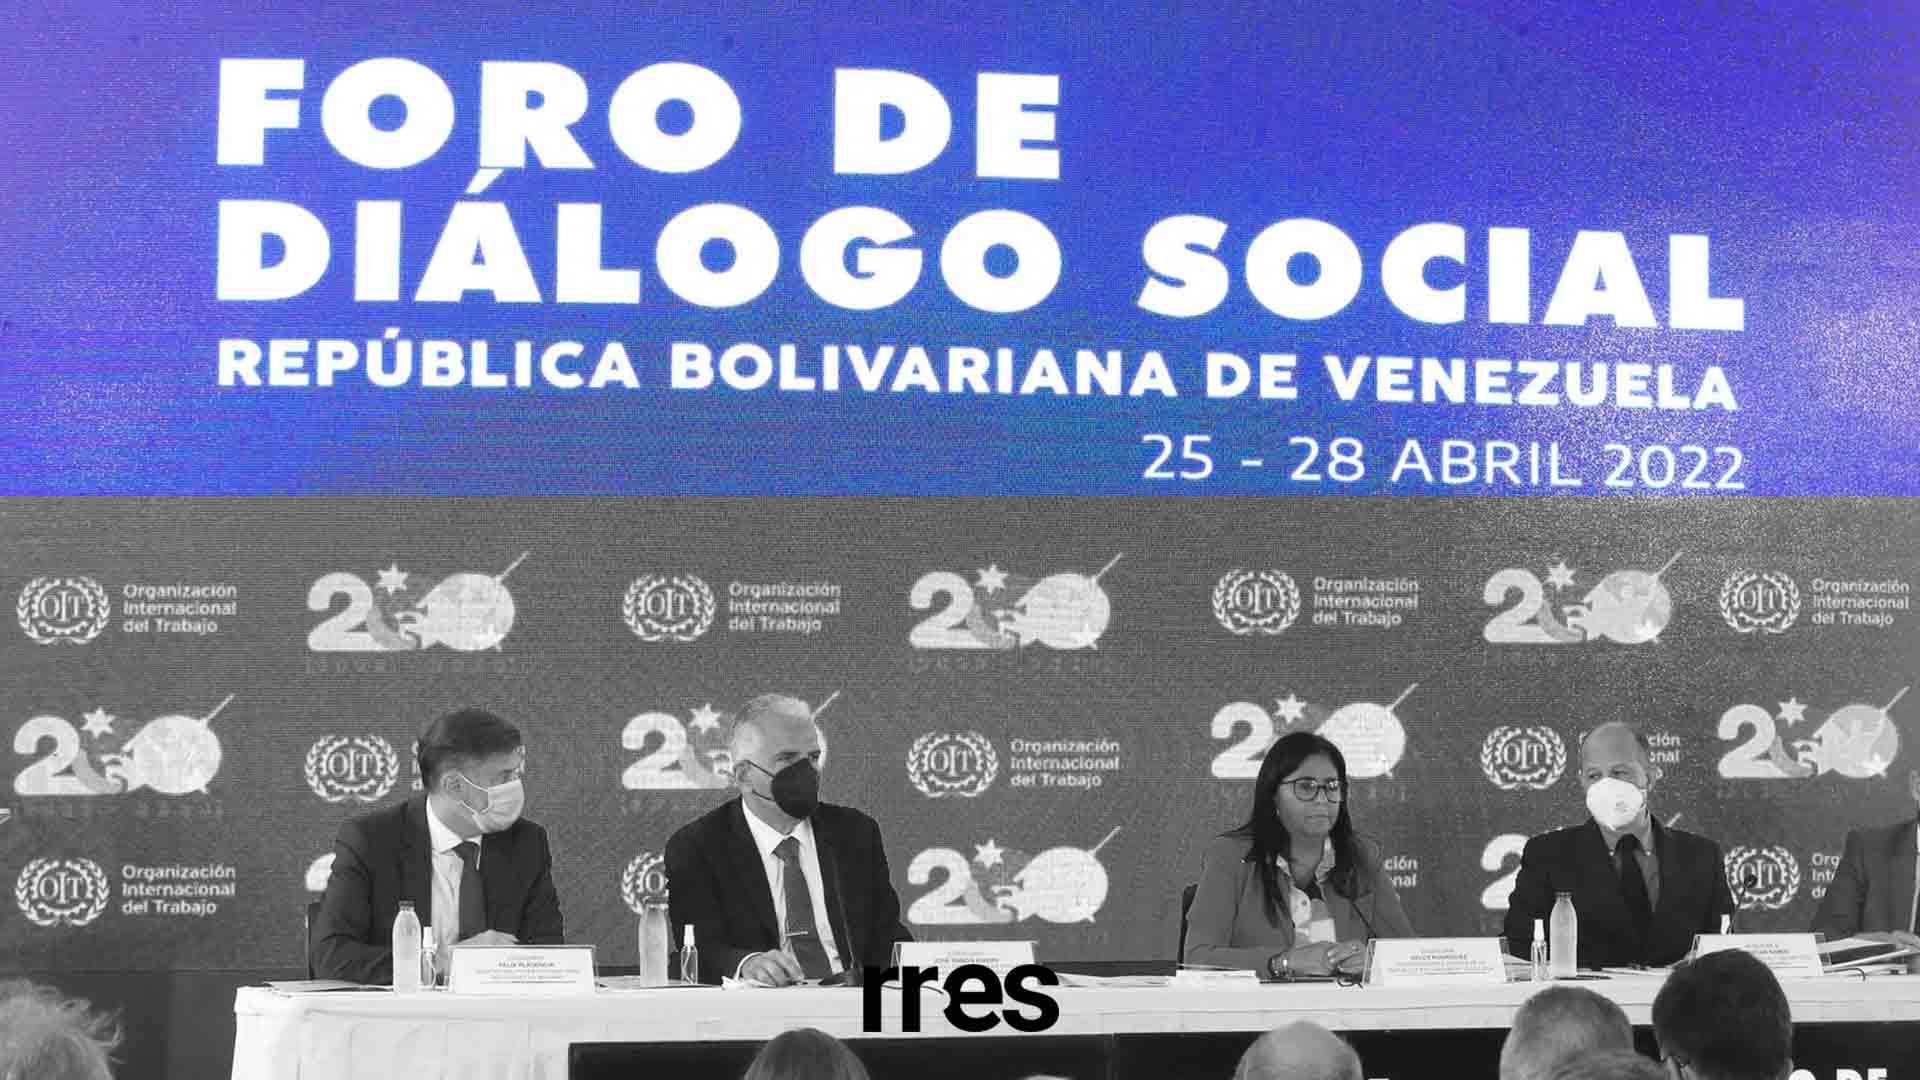 Foro de Diálogo Social en Venezuela: desafío para la OIT, por Froilán Barrios Nieves*